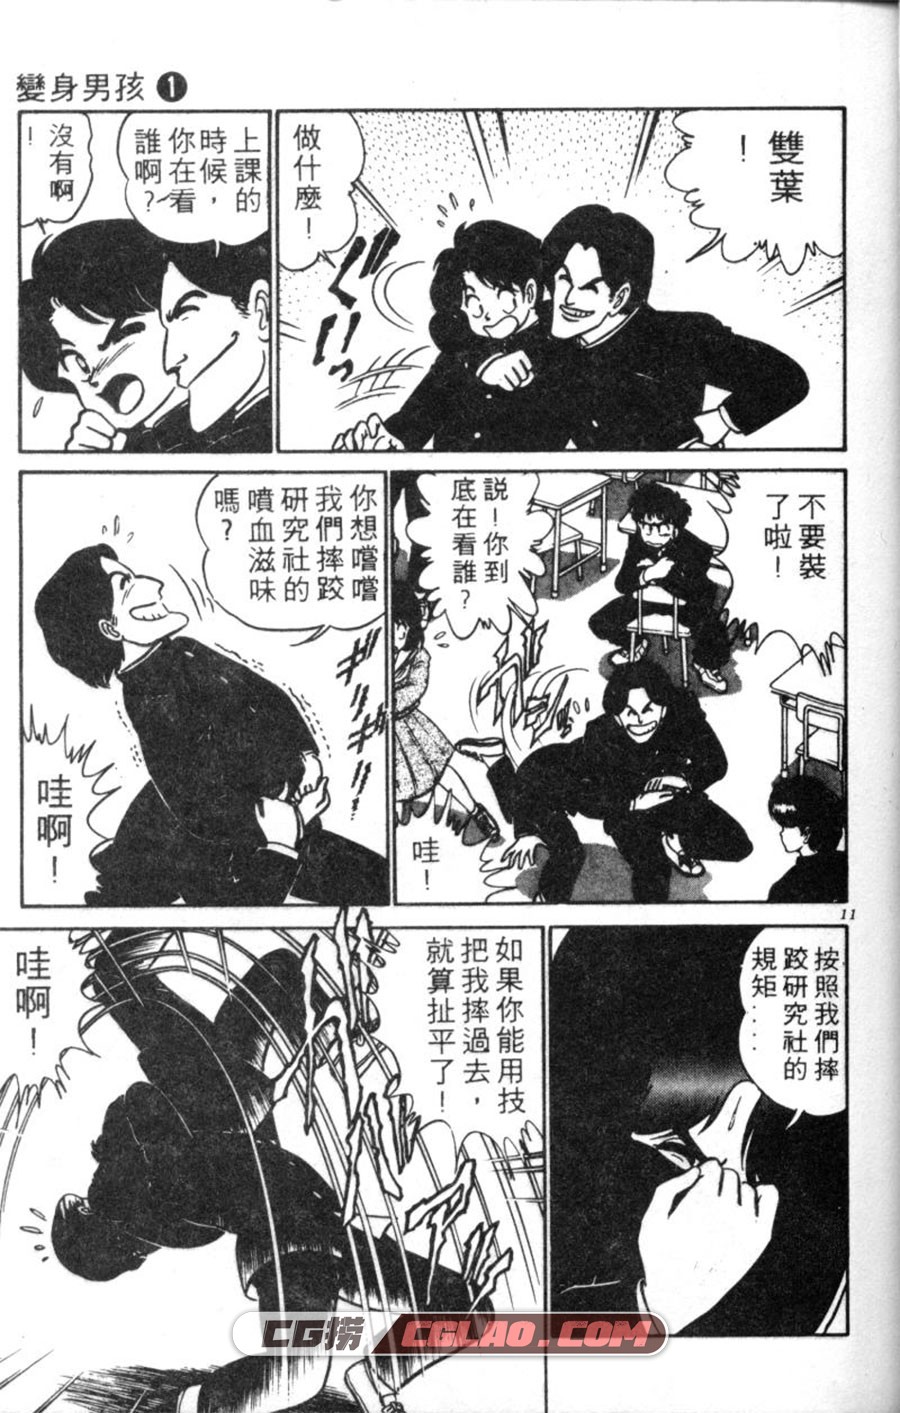 变身男孩 HiroshiAro 1-8卷 漫画全集完结下载 百度网盘下载,01-006.jpg